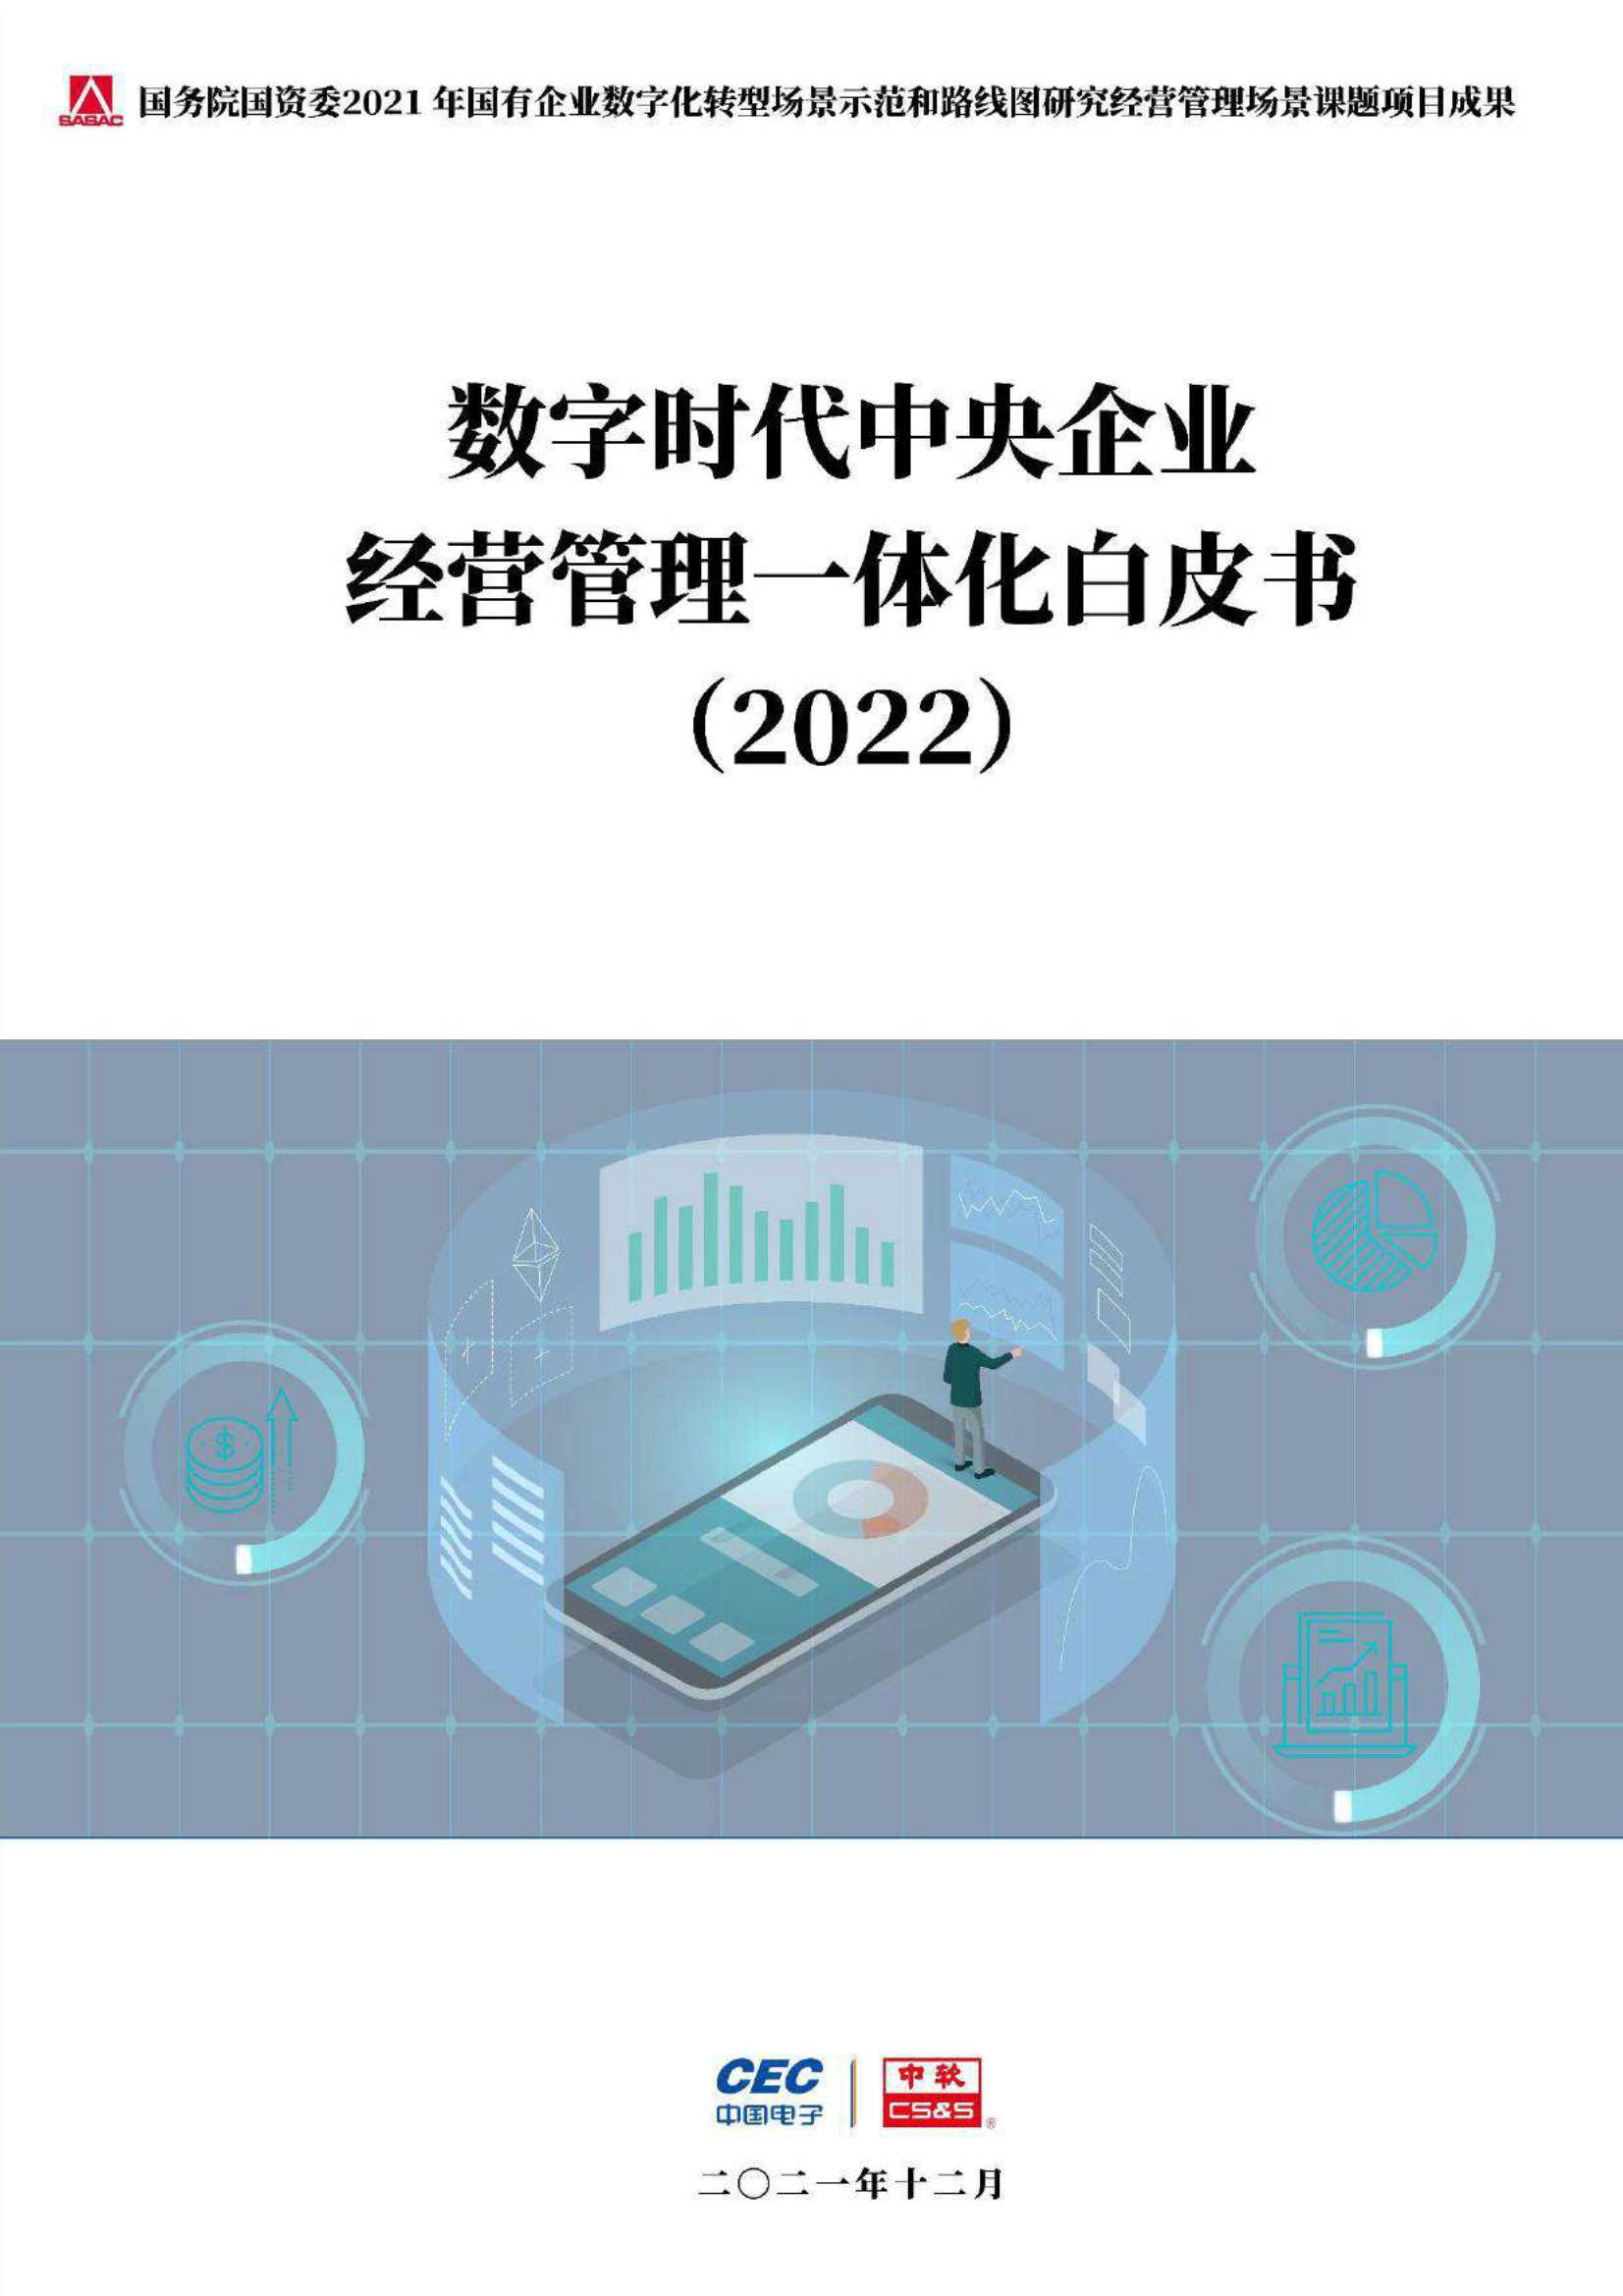 中国电子&中软-数字时代中央企业经营管理一体化白皮书-2021.12-63页